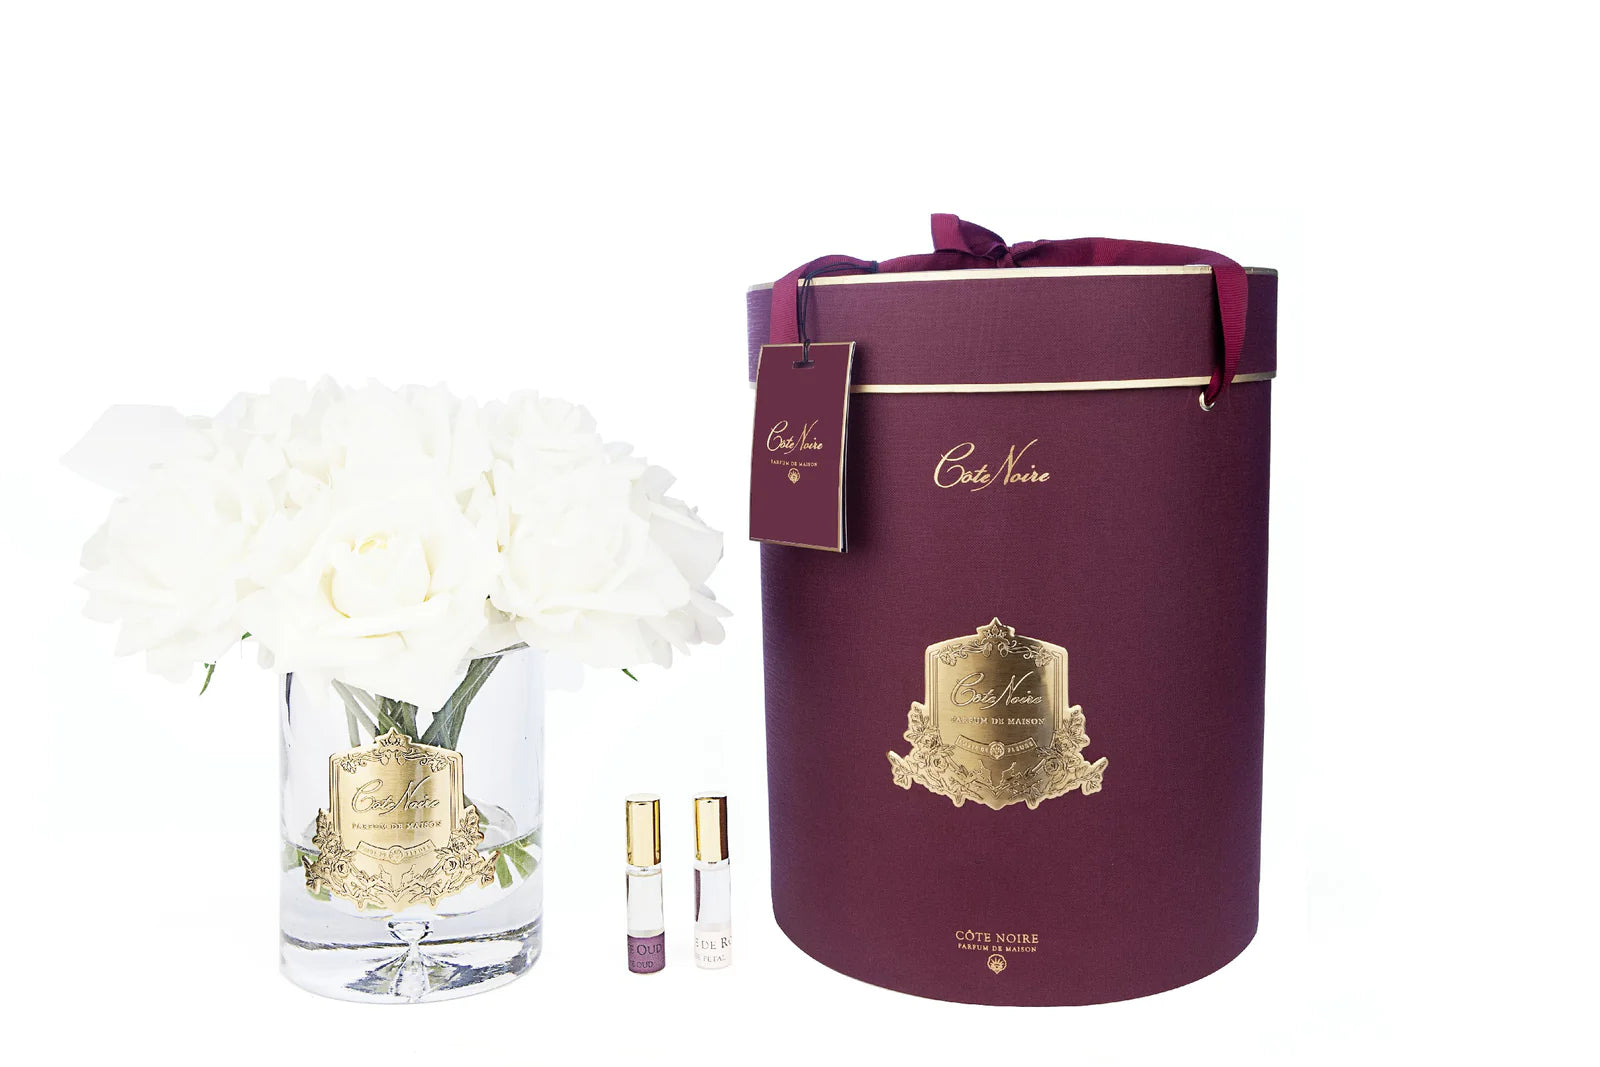 13 cremeweisse rosen arrangiert in einer edlen glasvase, zwei parfumsprays und eine luxurioese runde geschenkbox in burgunder.